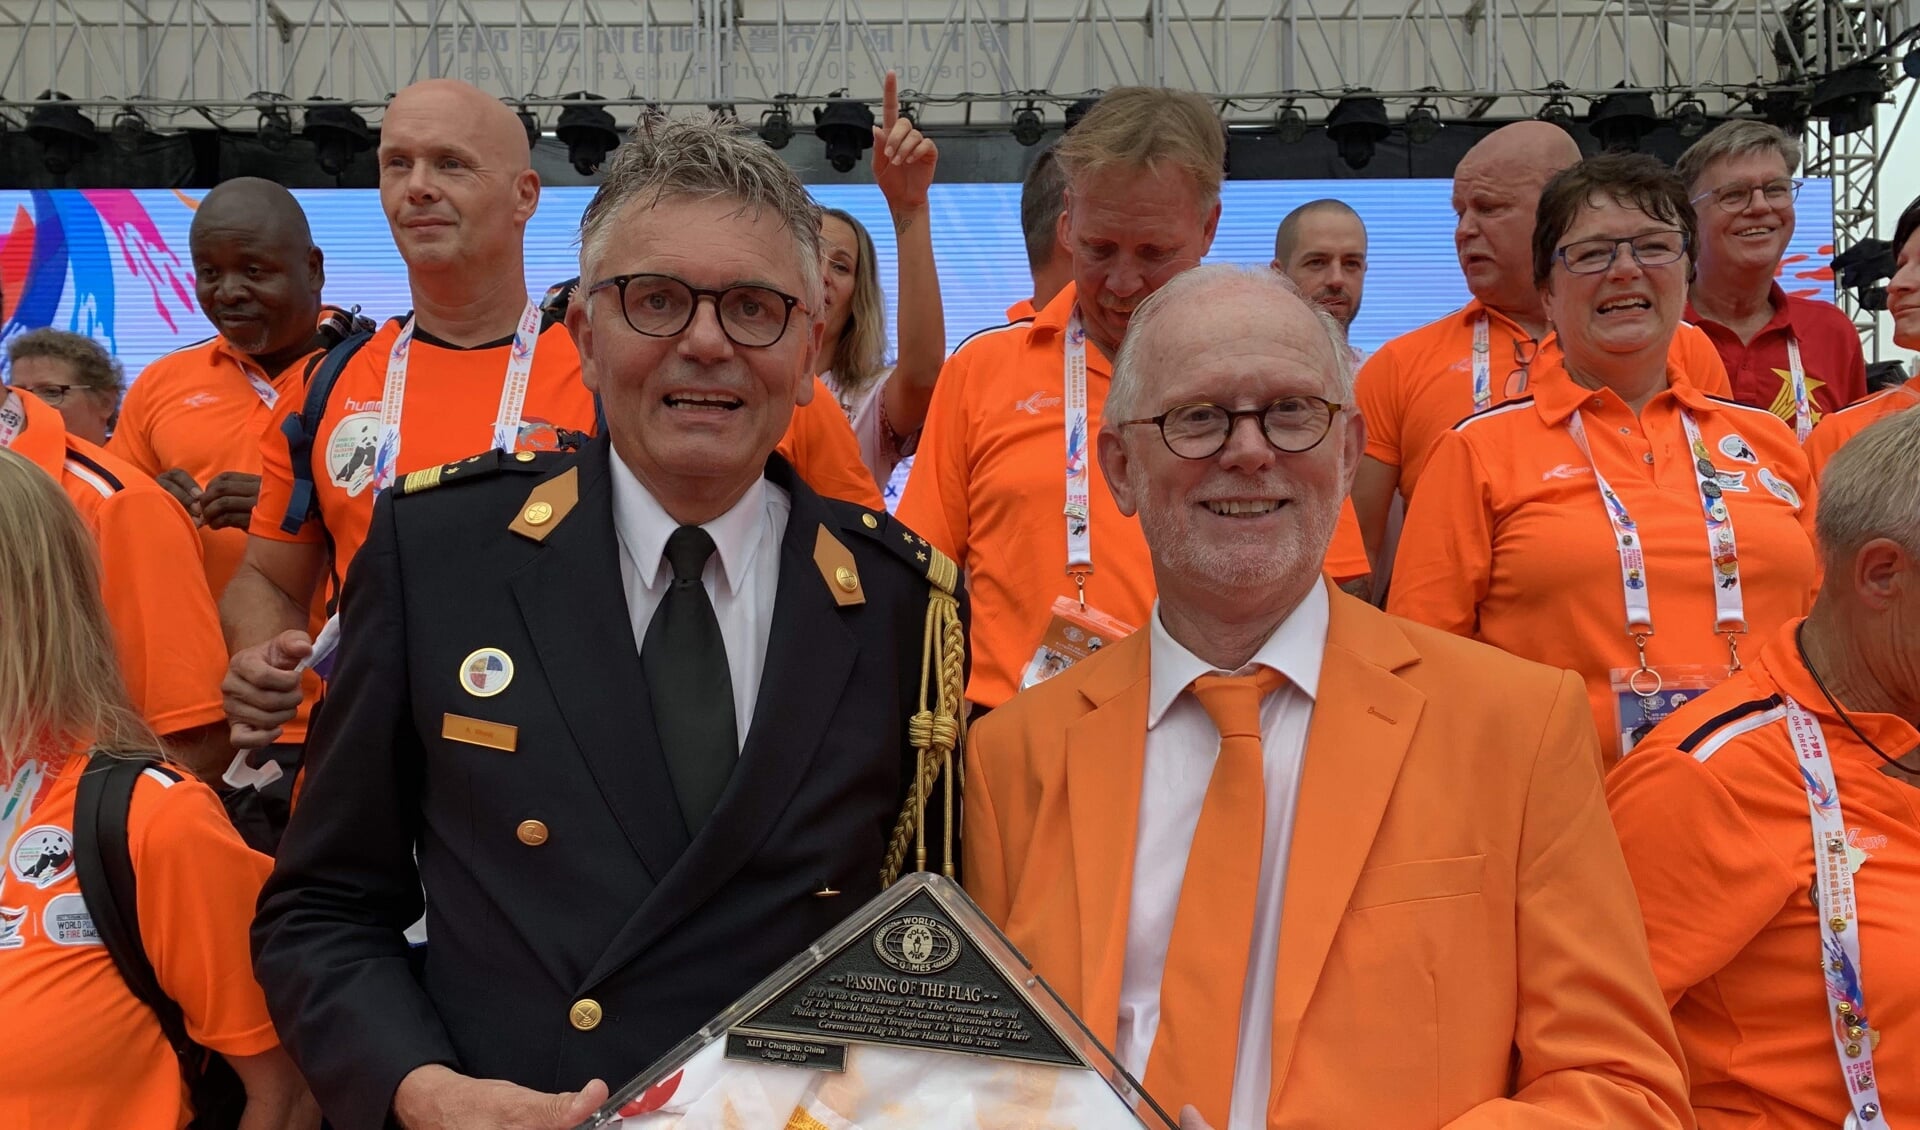 Arjen Littooij, Algemeen Directeur veiligheidsregio Rotterdam-Rijnmond en Bestuurslid WPFG Rotterdam 2021, krijgt de vlag overhandigd door Larry Collins, President WPFG Federation.